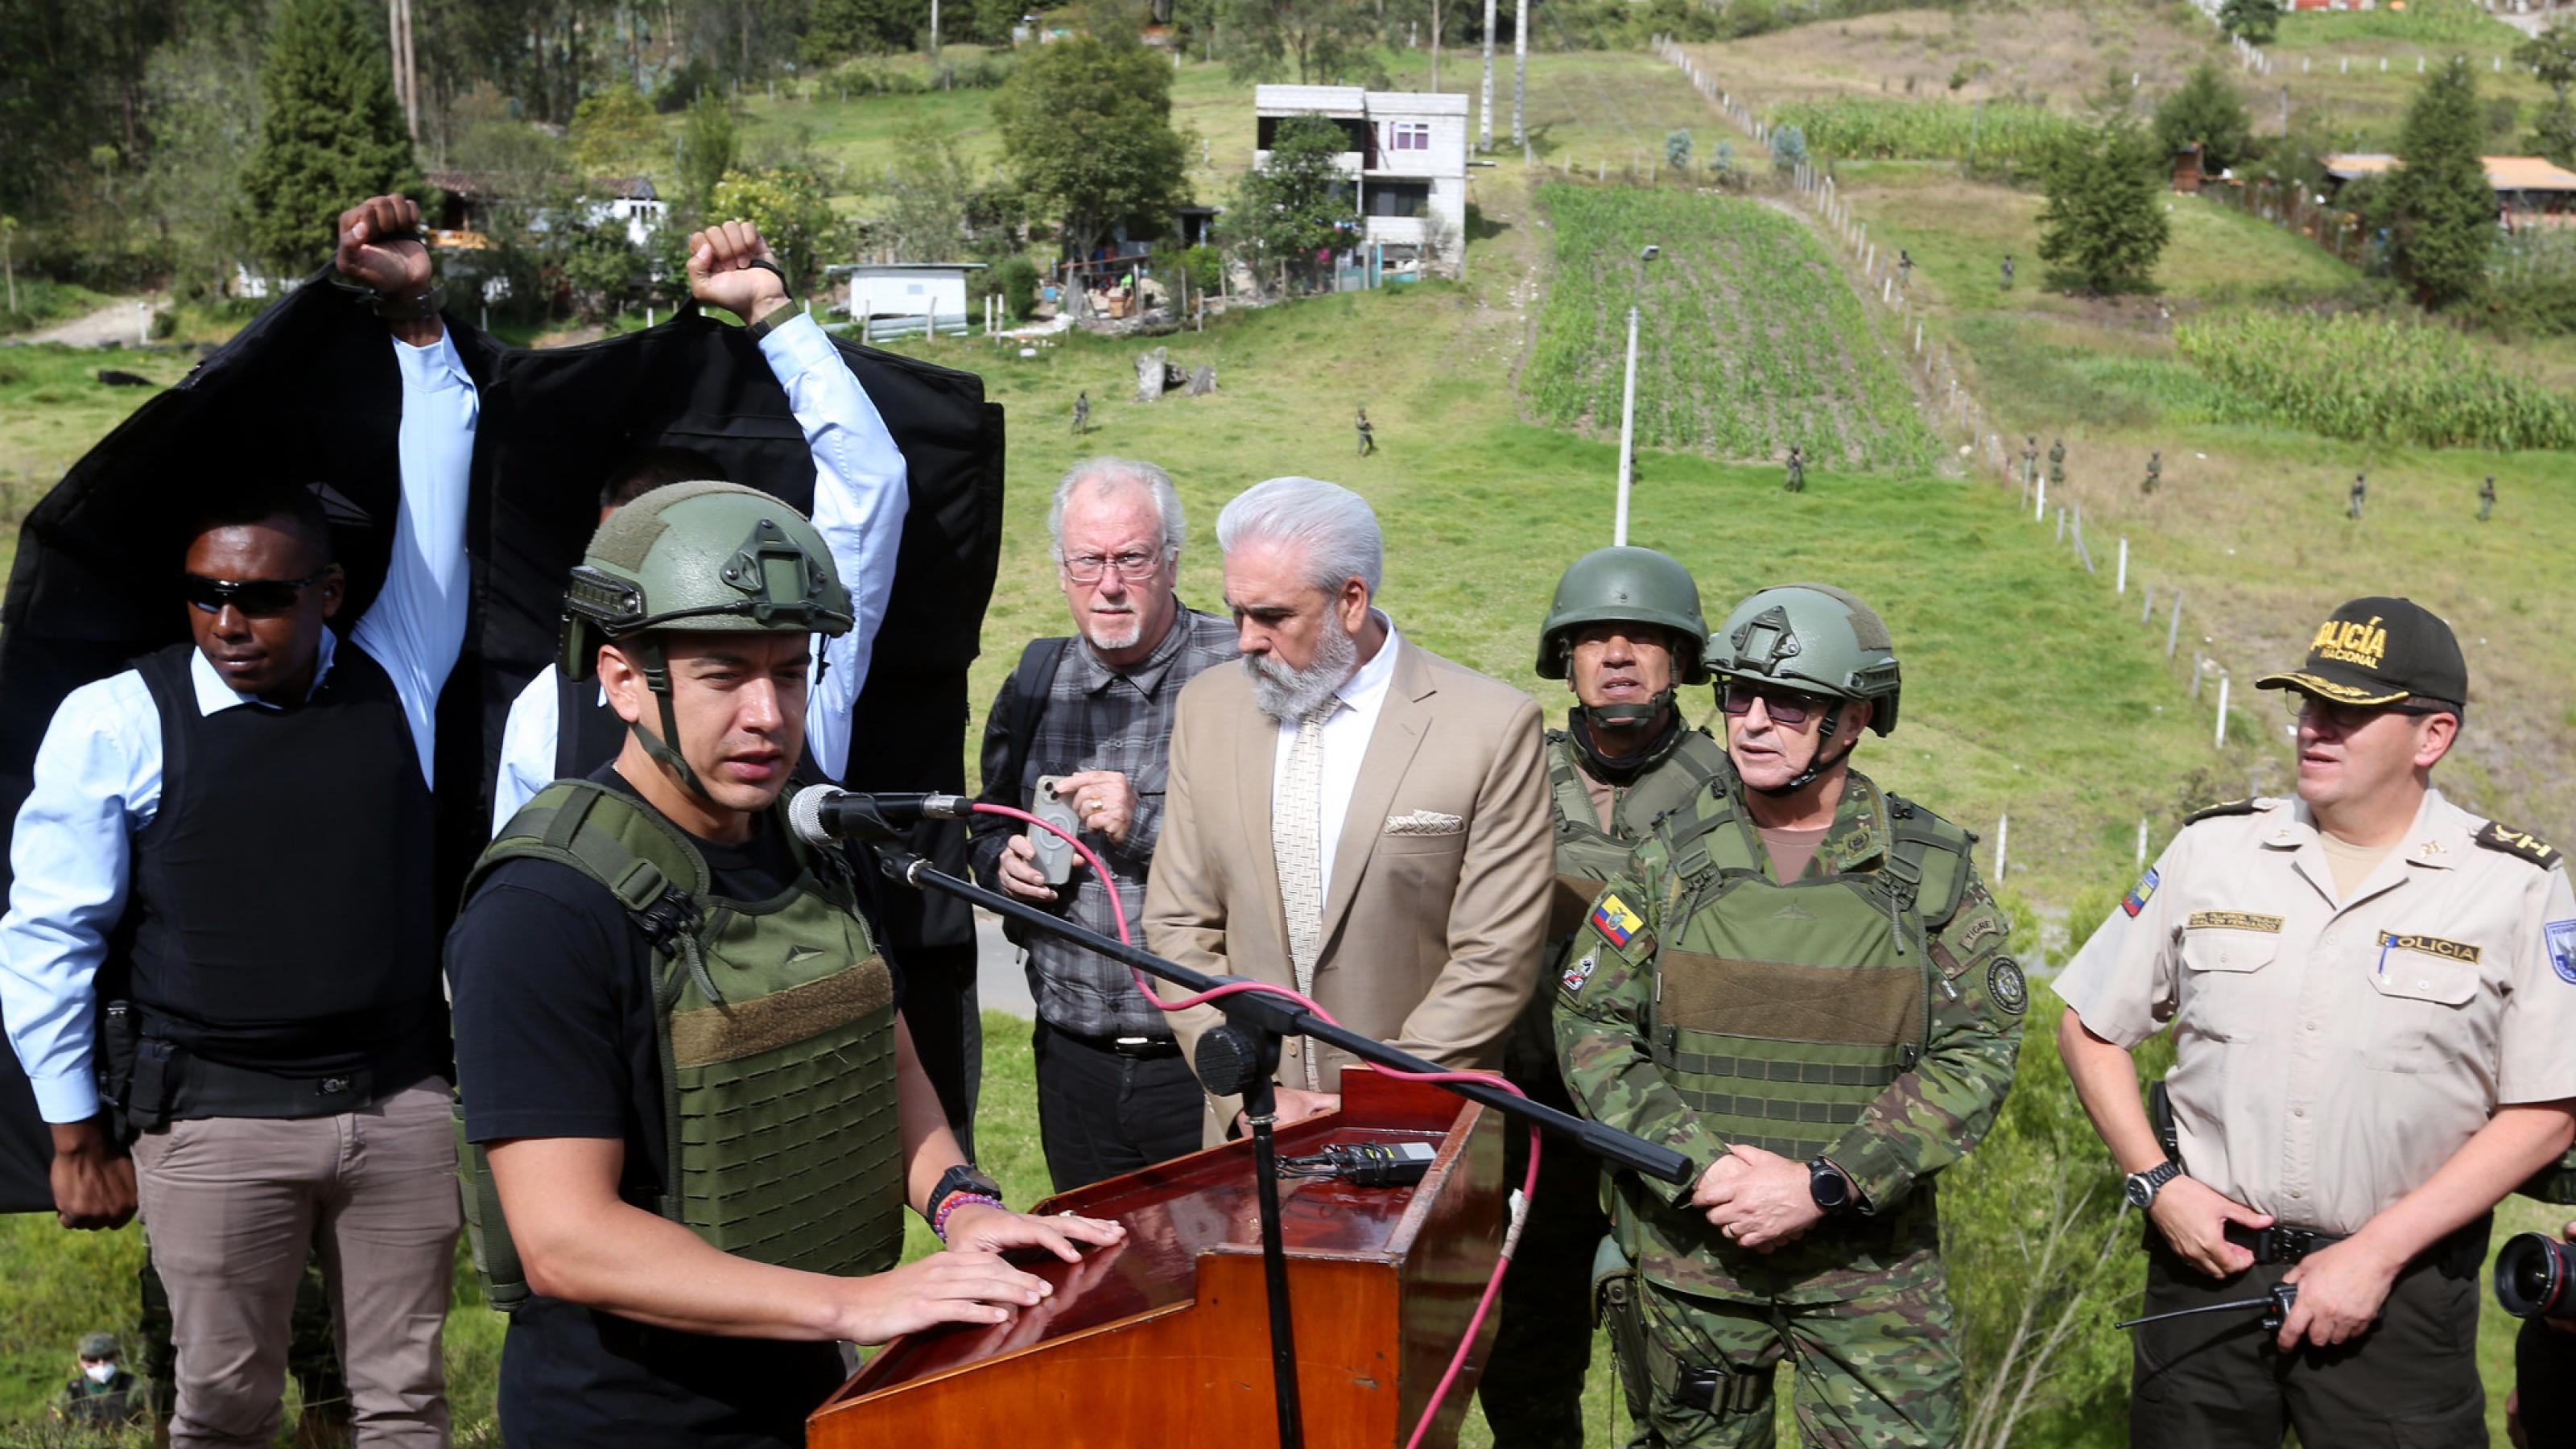 Ecuadors Präsident Daniel Noboa mit kugelsicherer Weste und Helm an einem Rednerpult, umgeben von Militärs.